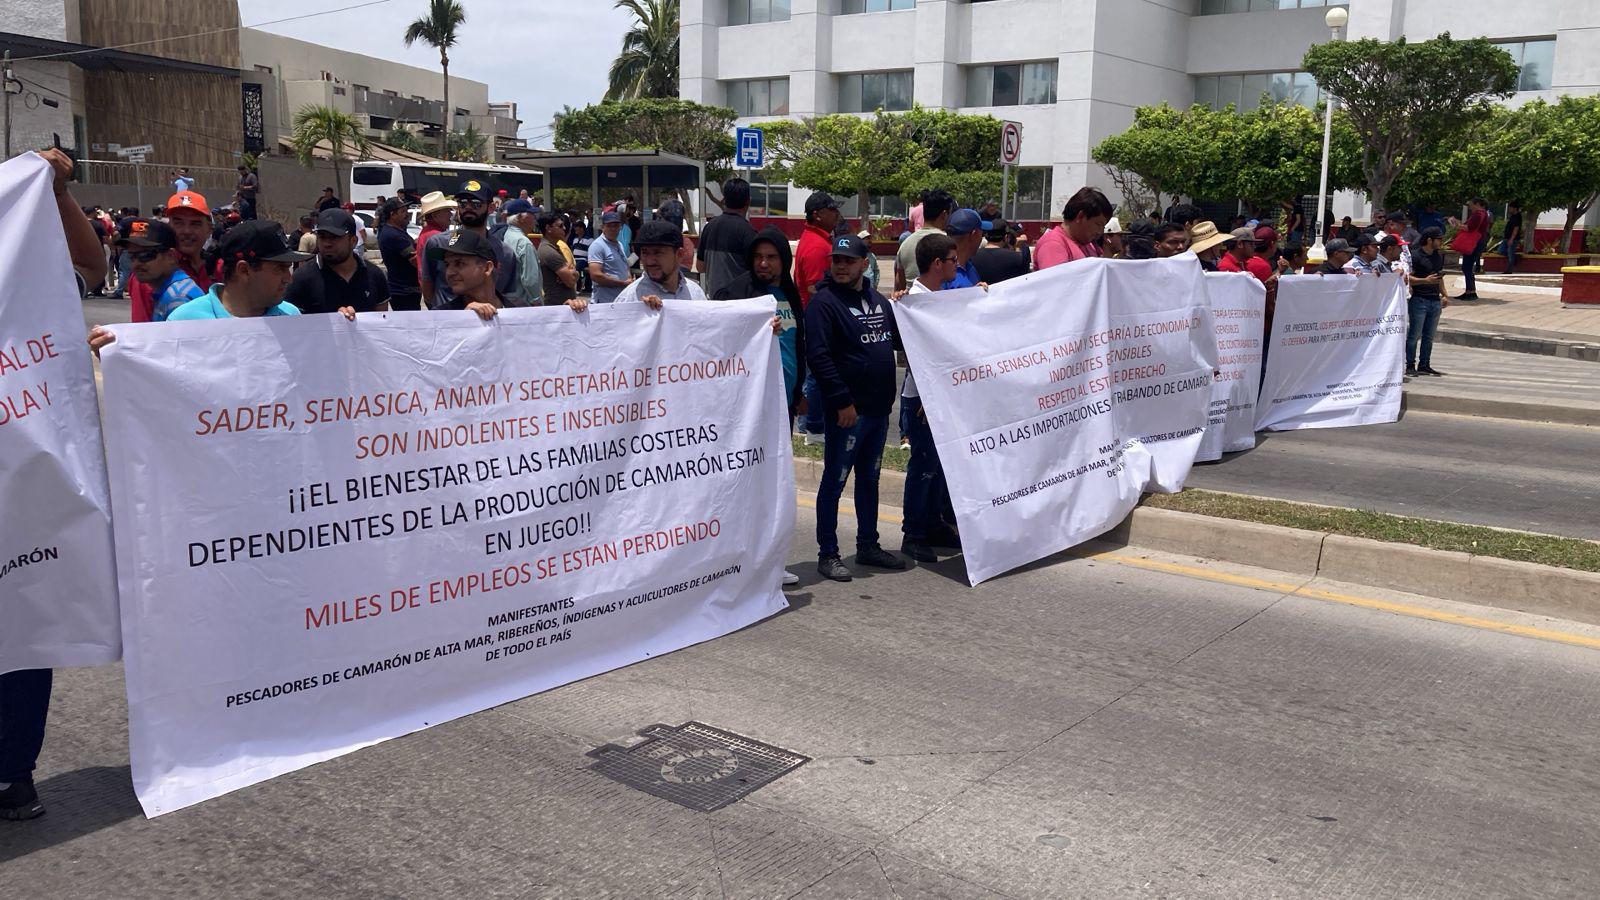 $!Acuacultores protestan y bloquean avenida en Mazatlán por contrabando de camarón